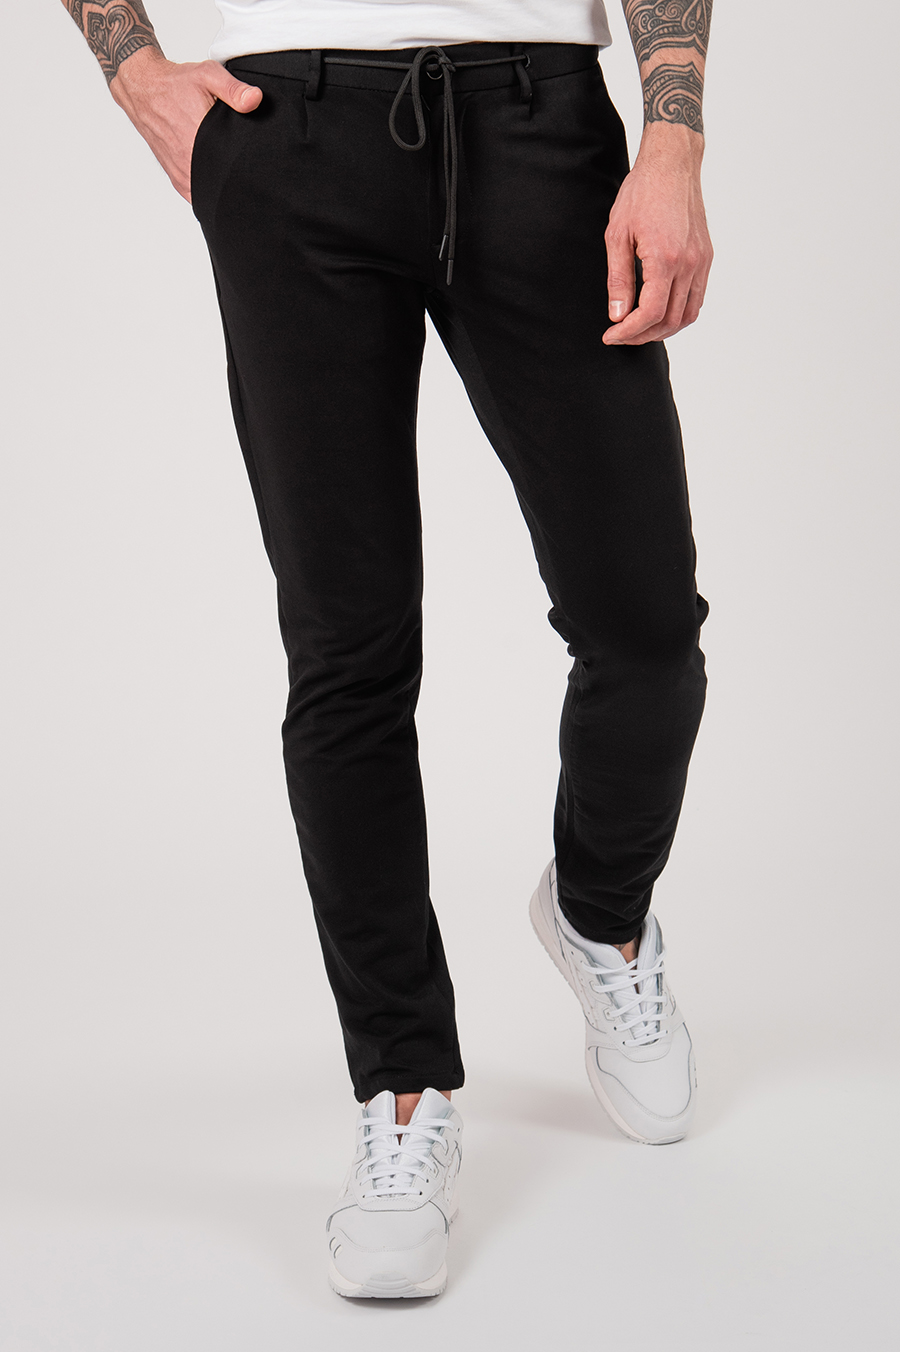 Мужские чёрные casual-брюки на шнурке. Арт.:6-2150-2 – купить в магазинему��ской одежды Smartcasuals